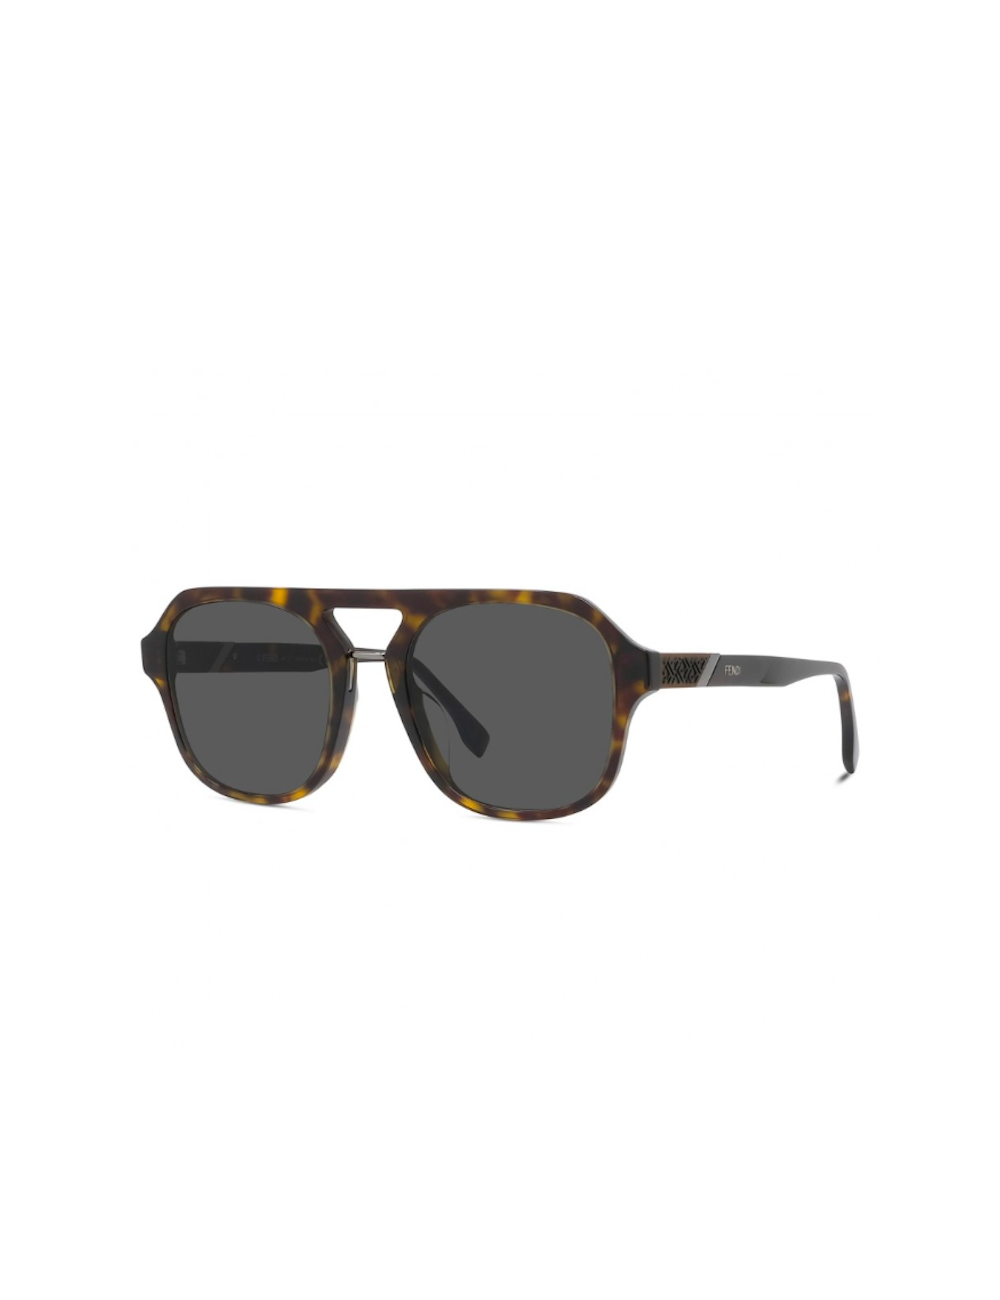 FENDI Frameless Acetate Sunglasses for Men